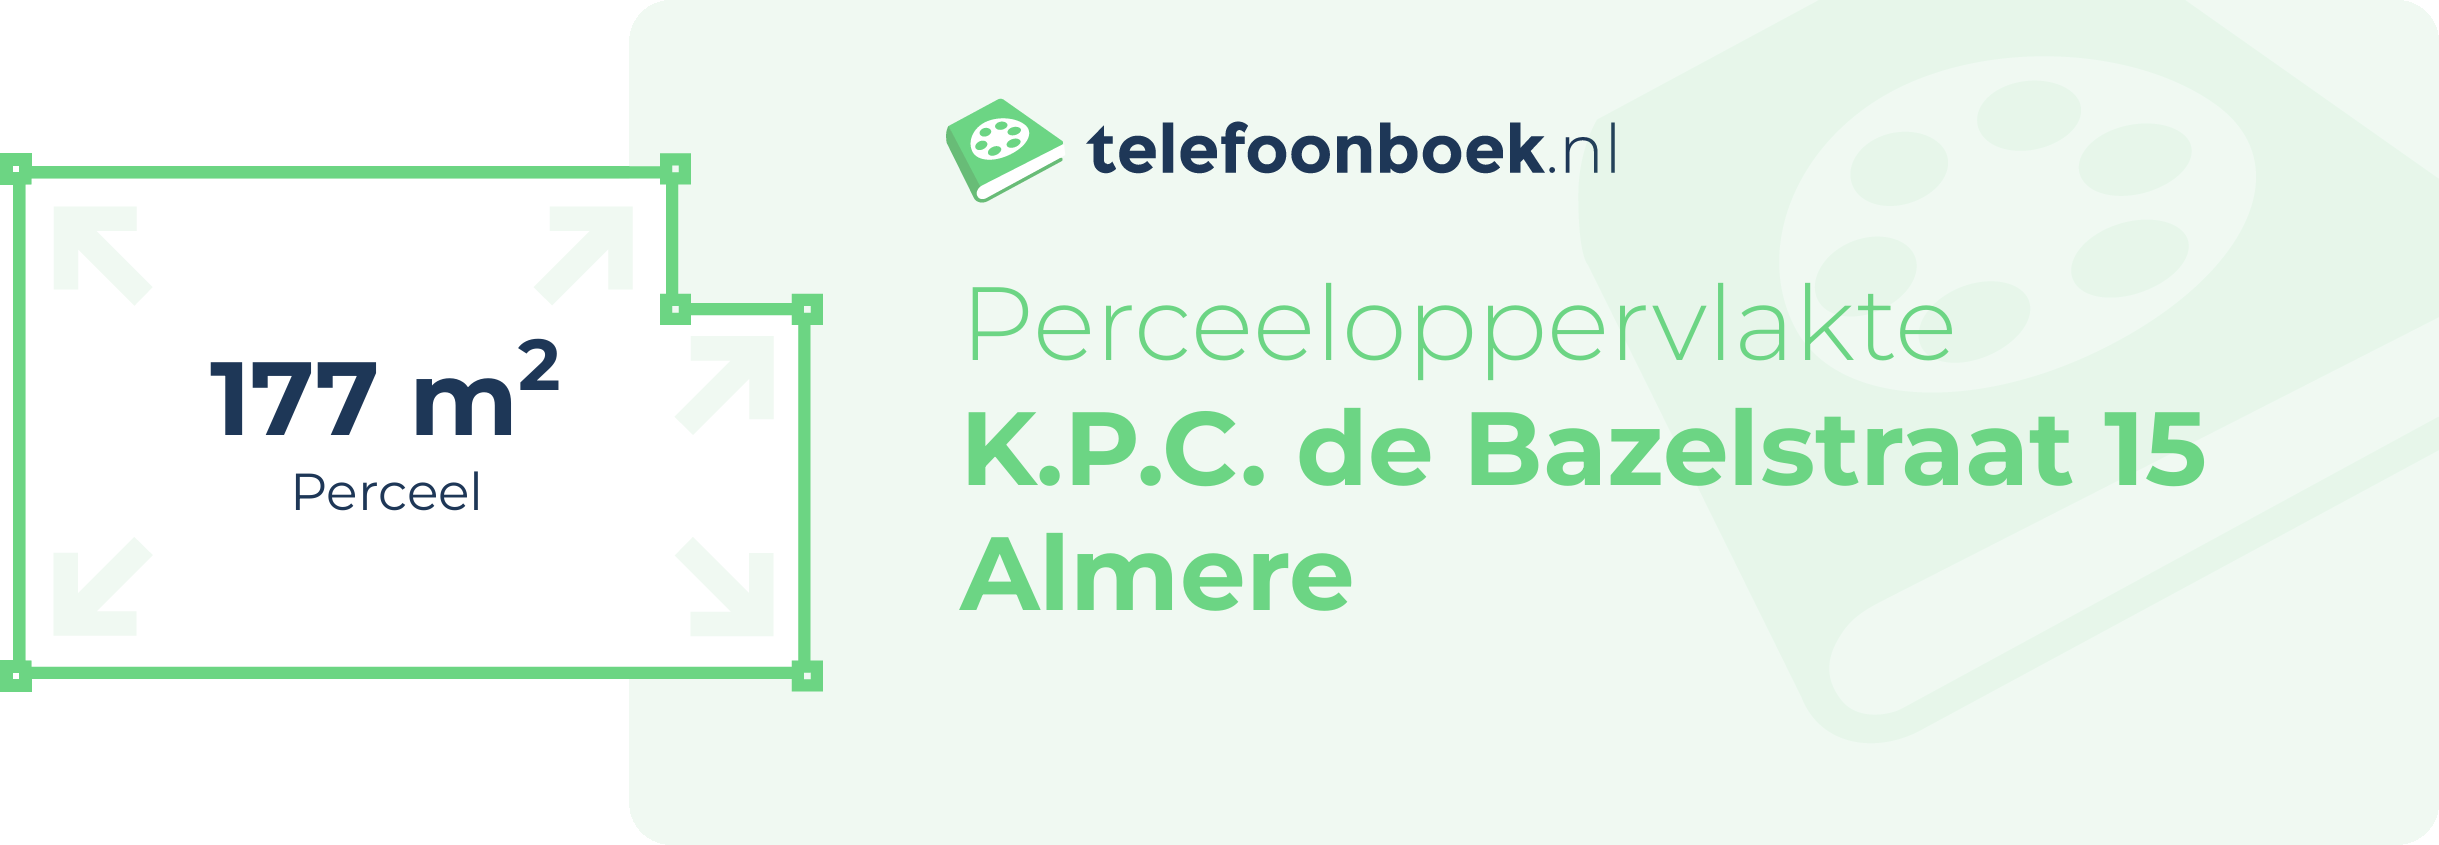 Perceeloppervlakte K.P.C. De Bazelstraat 15 Almere